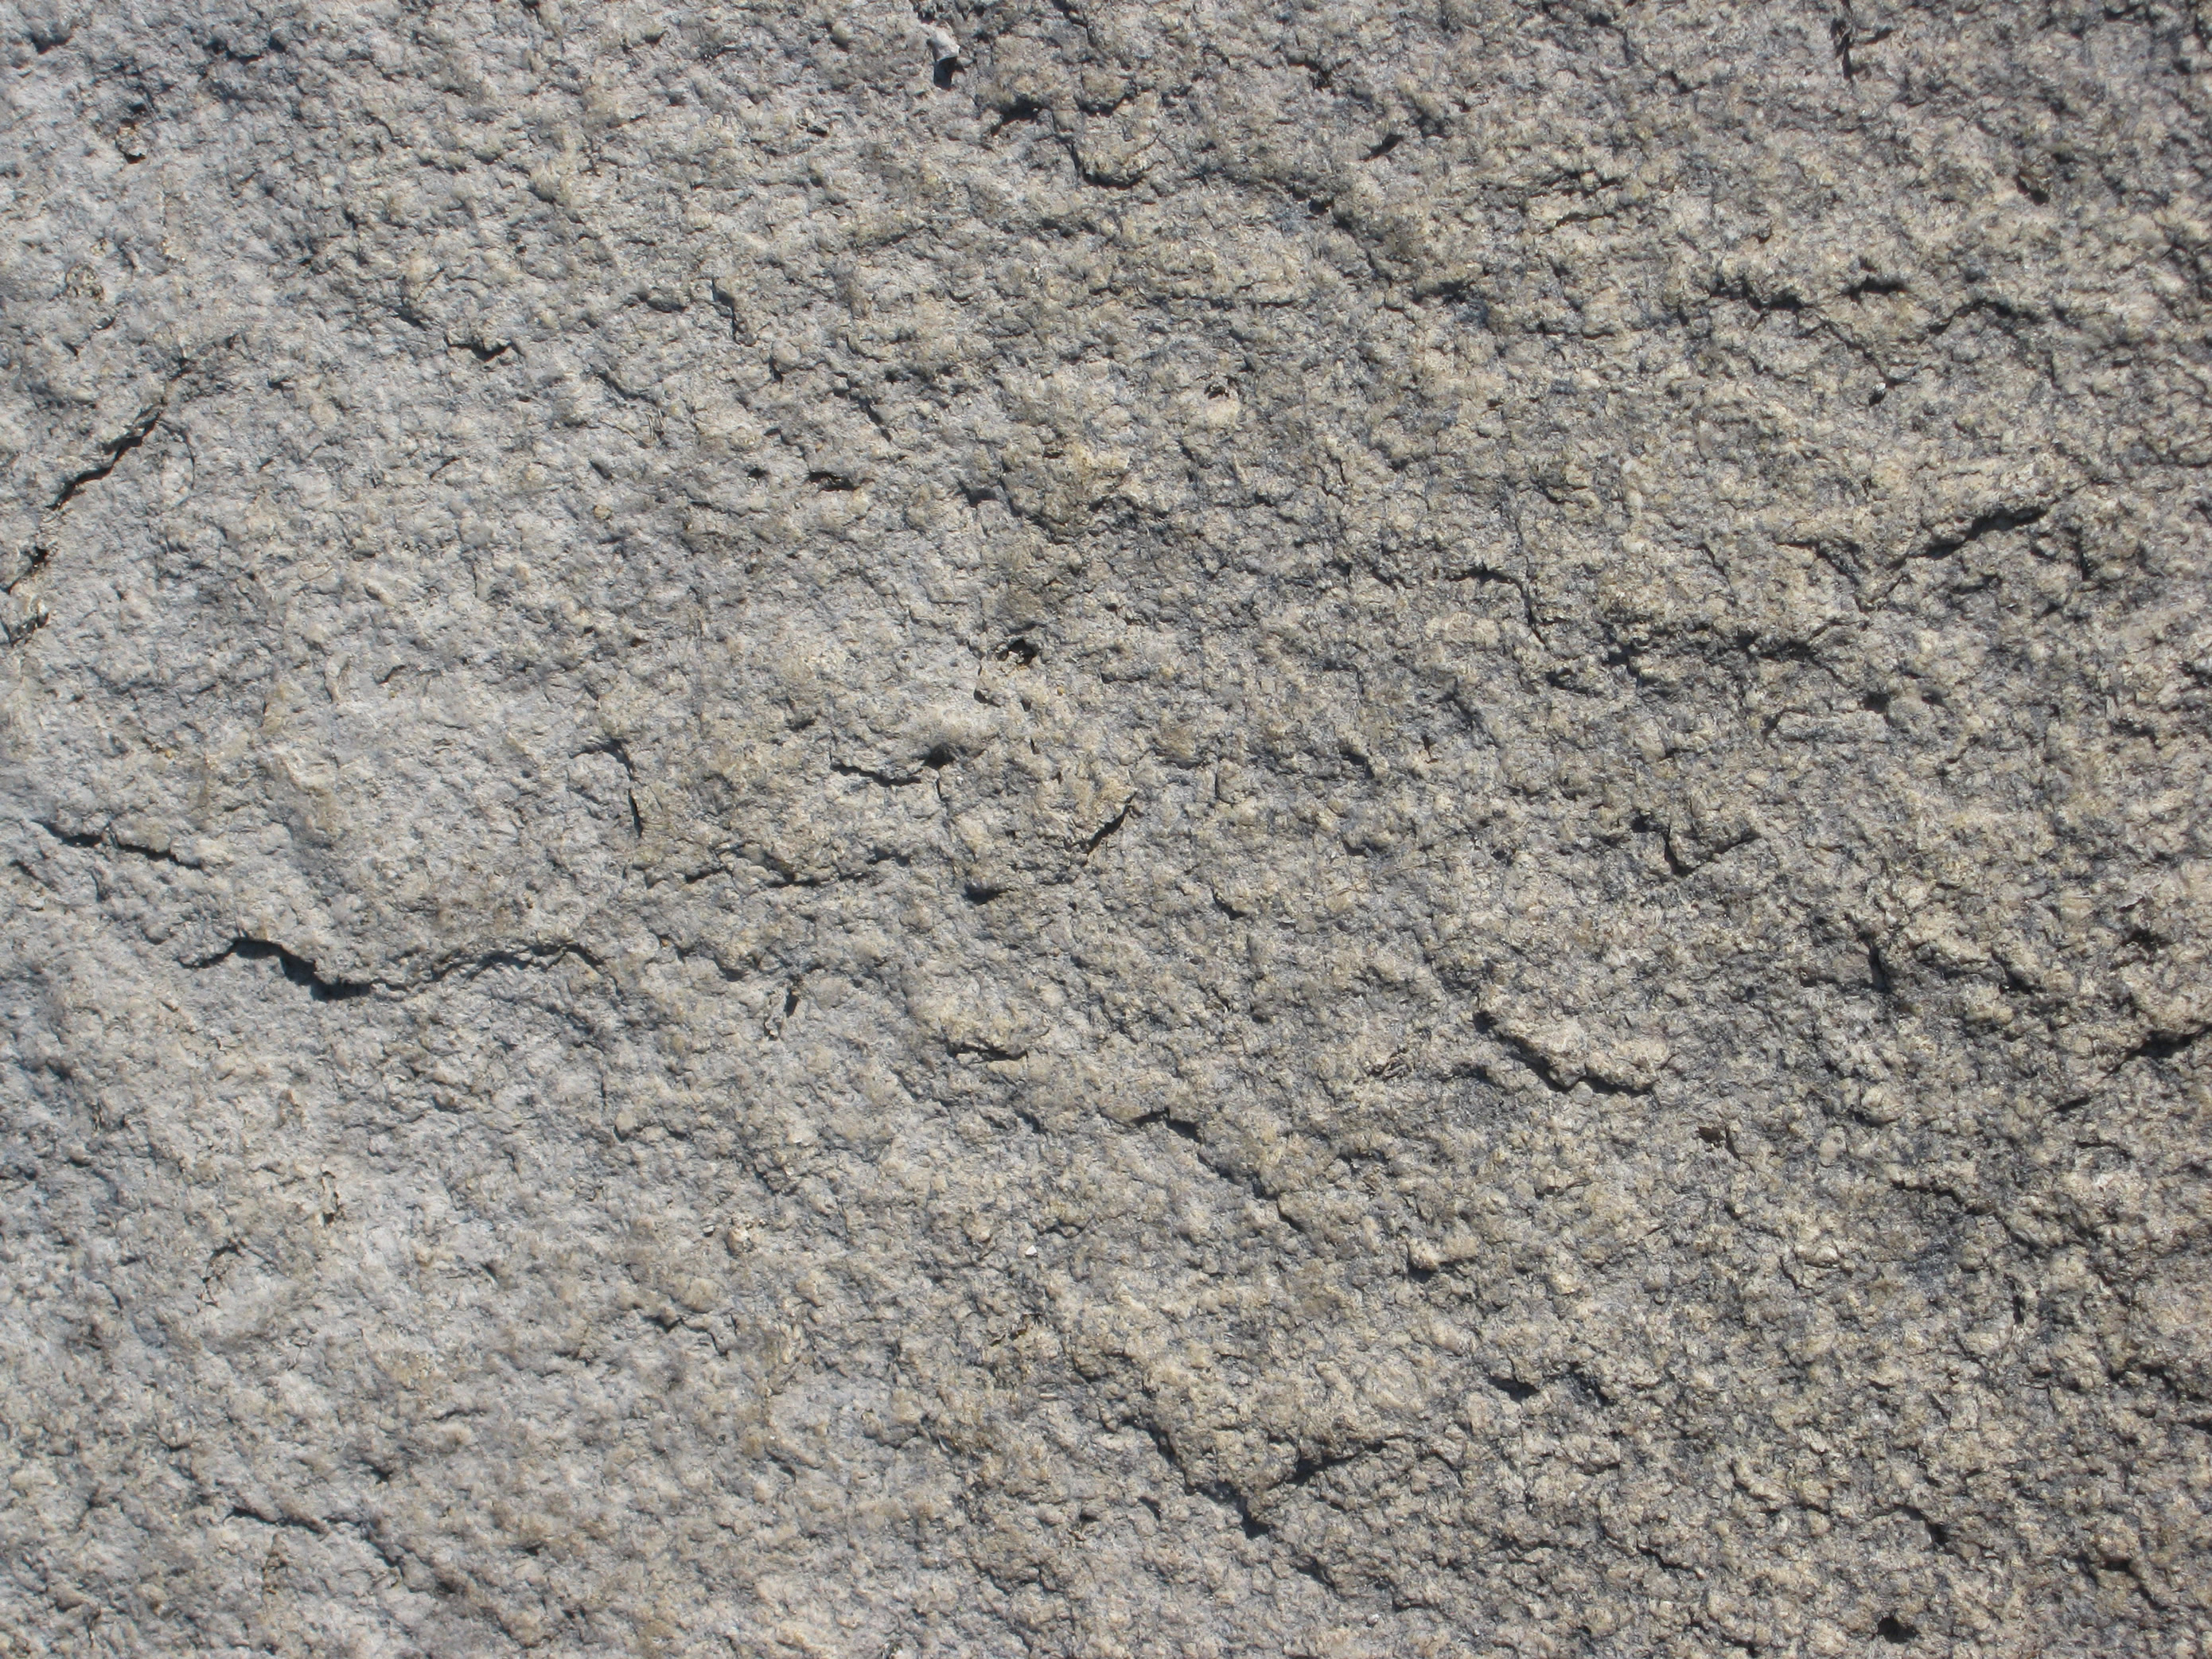 papier peint en granit,roche,mur,substrat rocheux,granit,béton